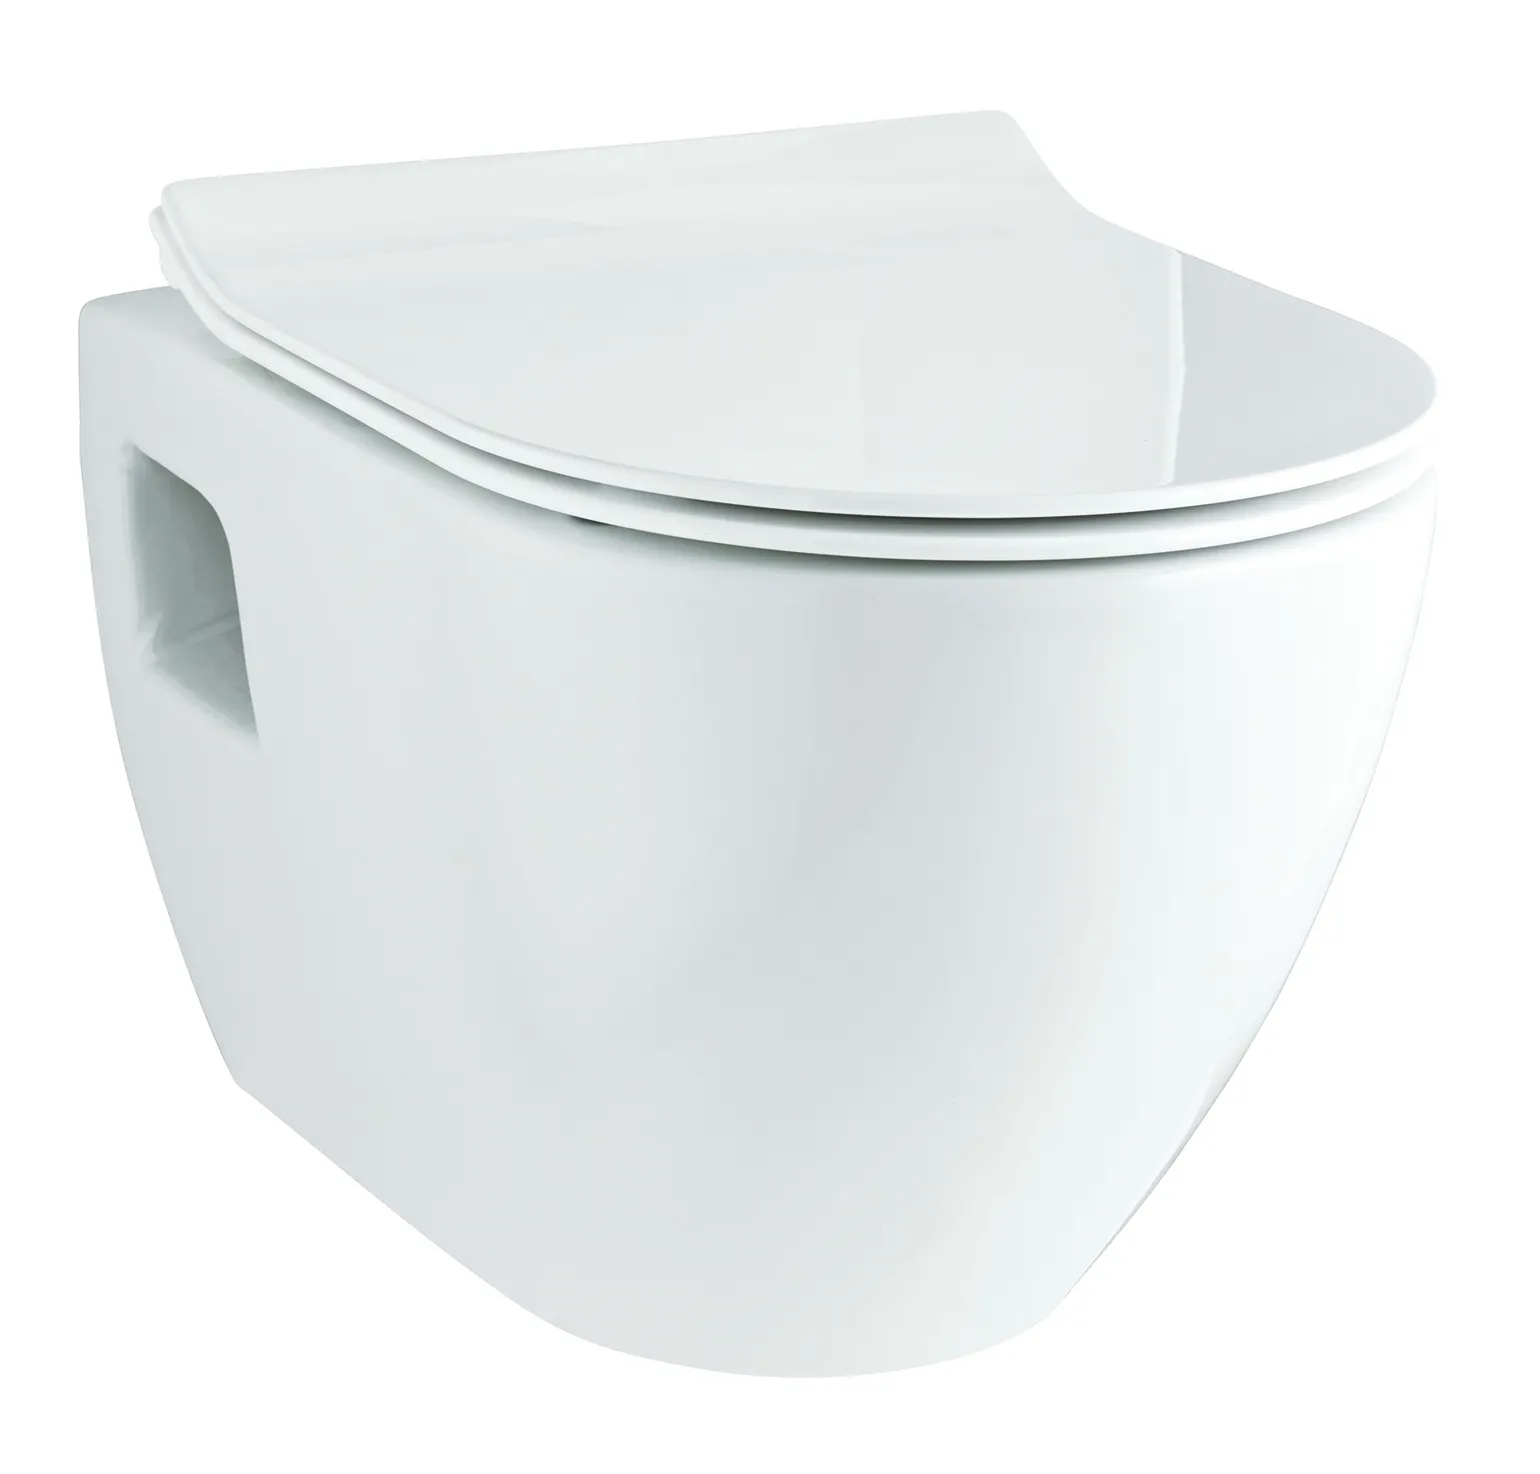 ZIAX su dolabı Modern banyo duvar asılı tuvalet sıhhi ile çerçevesiz CE belgeli